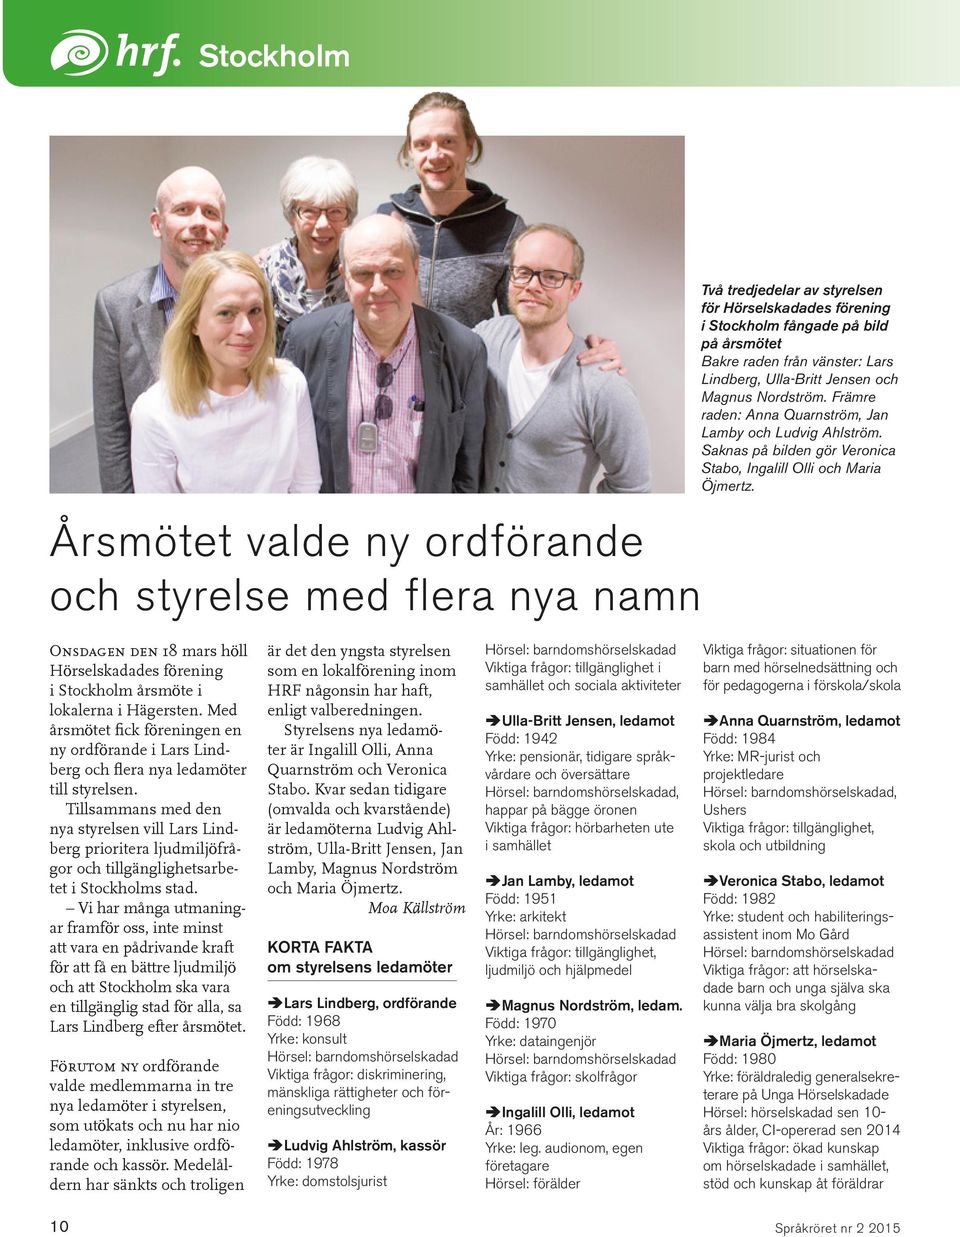 Onsdagen den 18 mars höll Hörselskadades förening i Stockholm årsmöte i lokalerna i Hägersten. Med årsmötet fick föreningen en ny ordförande i Lars Lindberg och flera nya ledamöter till styrelsen.